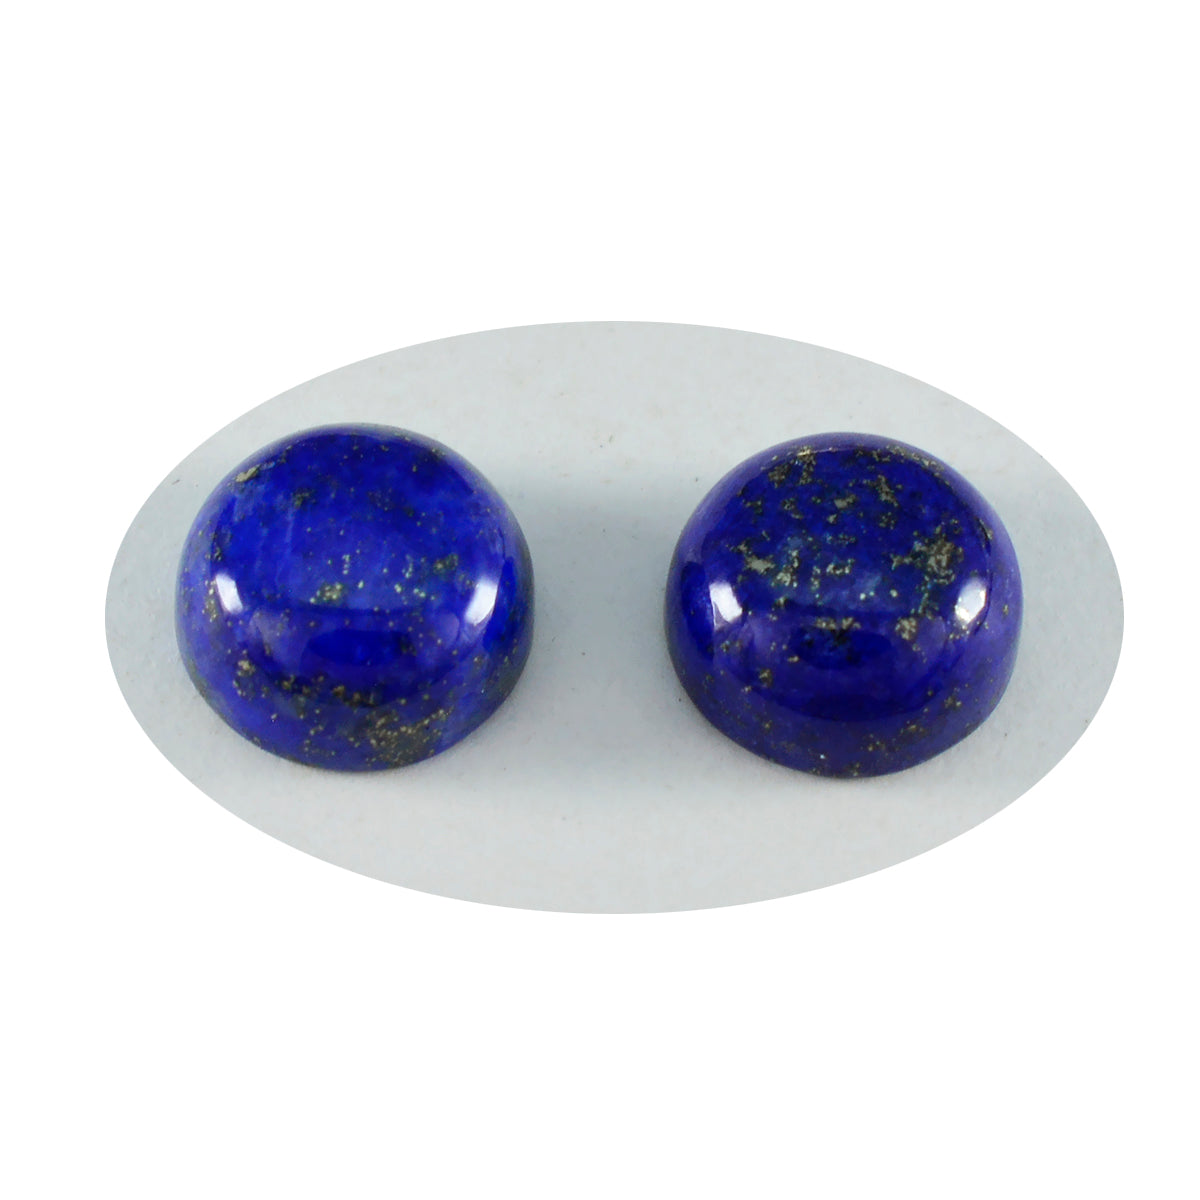 Riyogems 1PC Blue Lapis Lazuli Cabochon 9x9 mm Round Shape astonishing Quality Gem